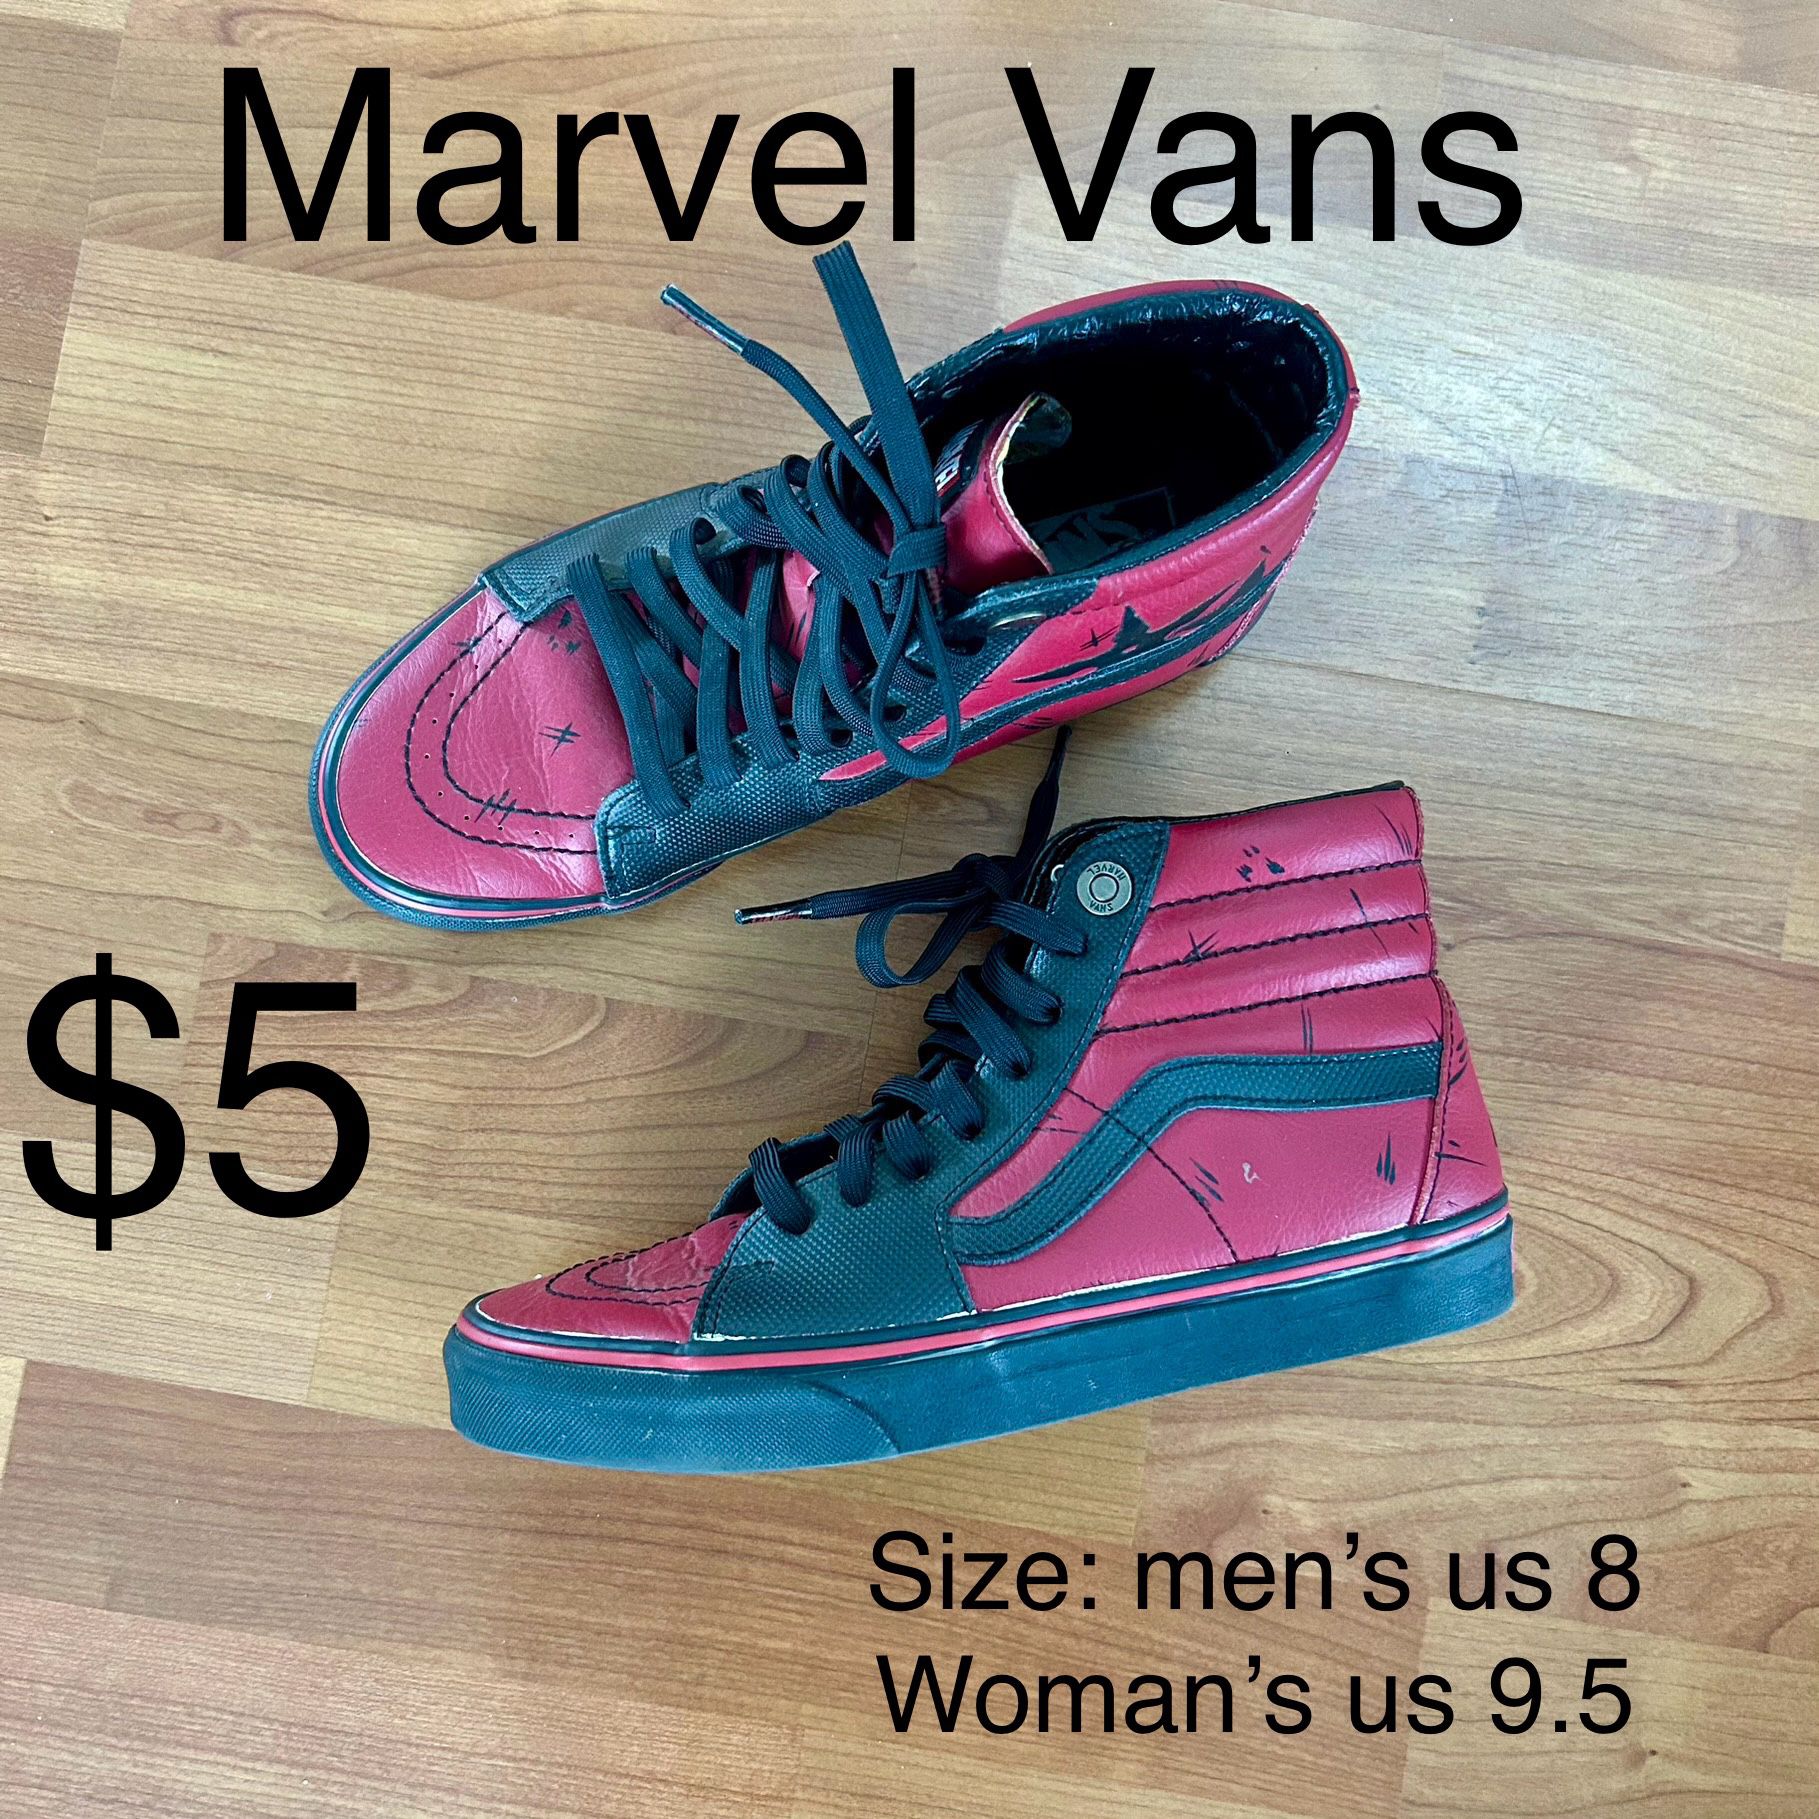 Marvel Vans For Sale! Just Five Dollars